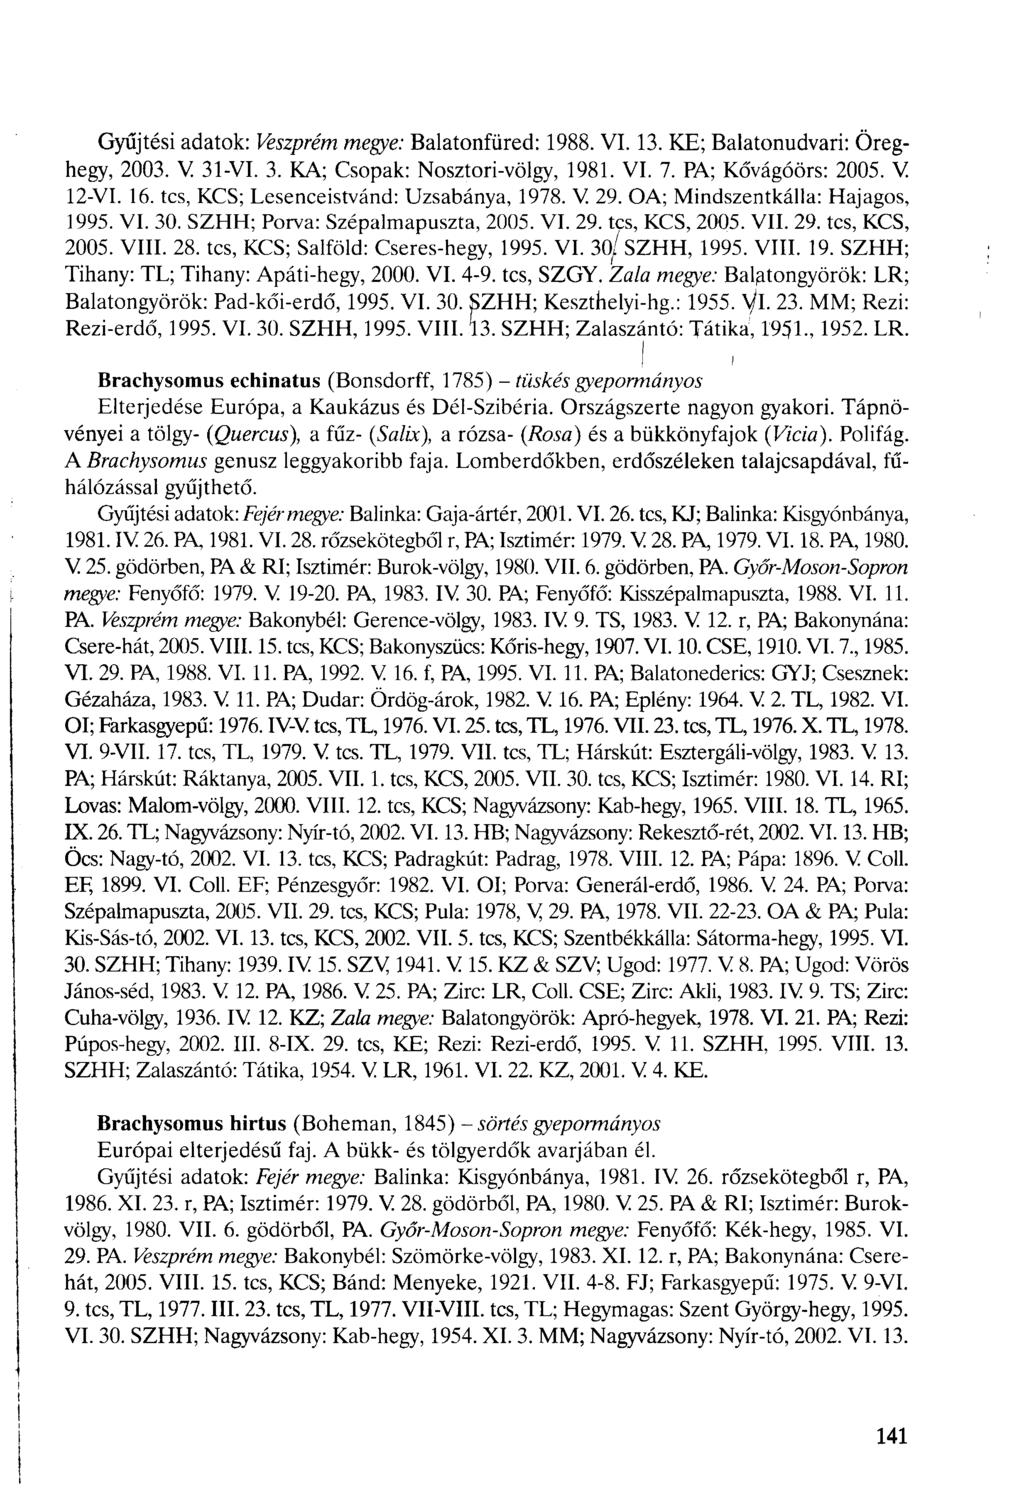 Gyűjtési adatok: Veszprém megye: Balatonfüred: 1988. VI. 13. KE; Balatonudvari: Öreghegy, 2003. V 31-VI. 3. KA; Csopak: Nosztori-völgy, 1981. VI. 7. PA; Kővágóörs: 2005. V 12-VI. 16.